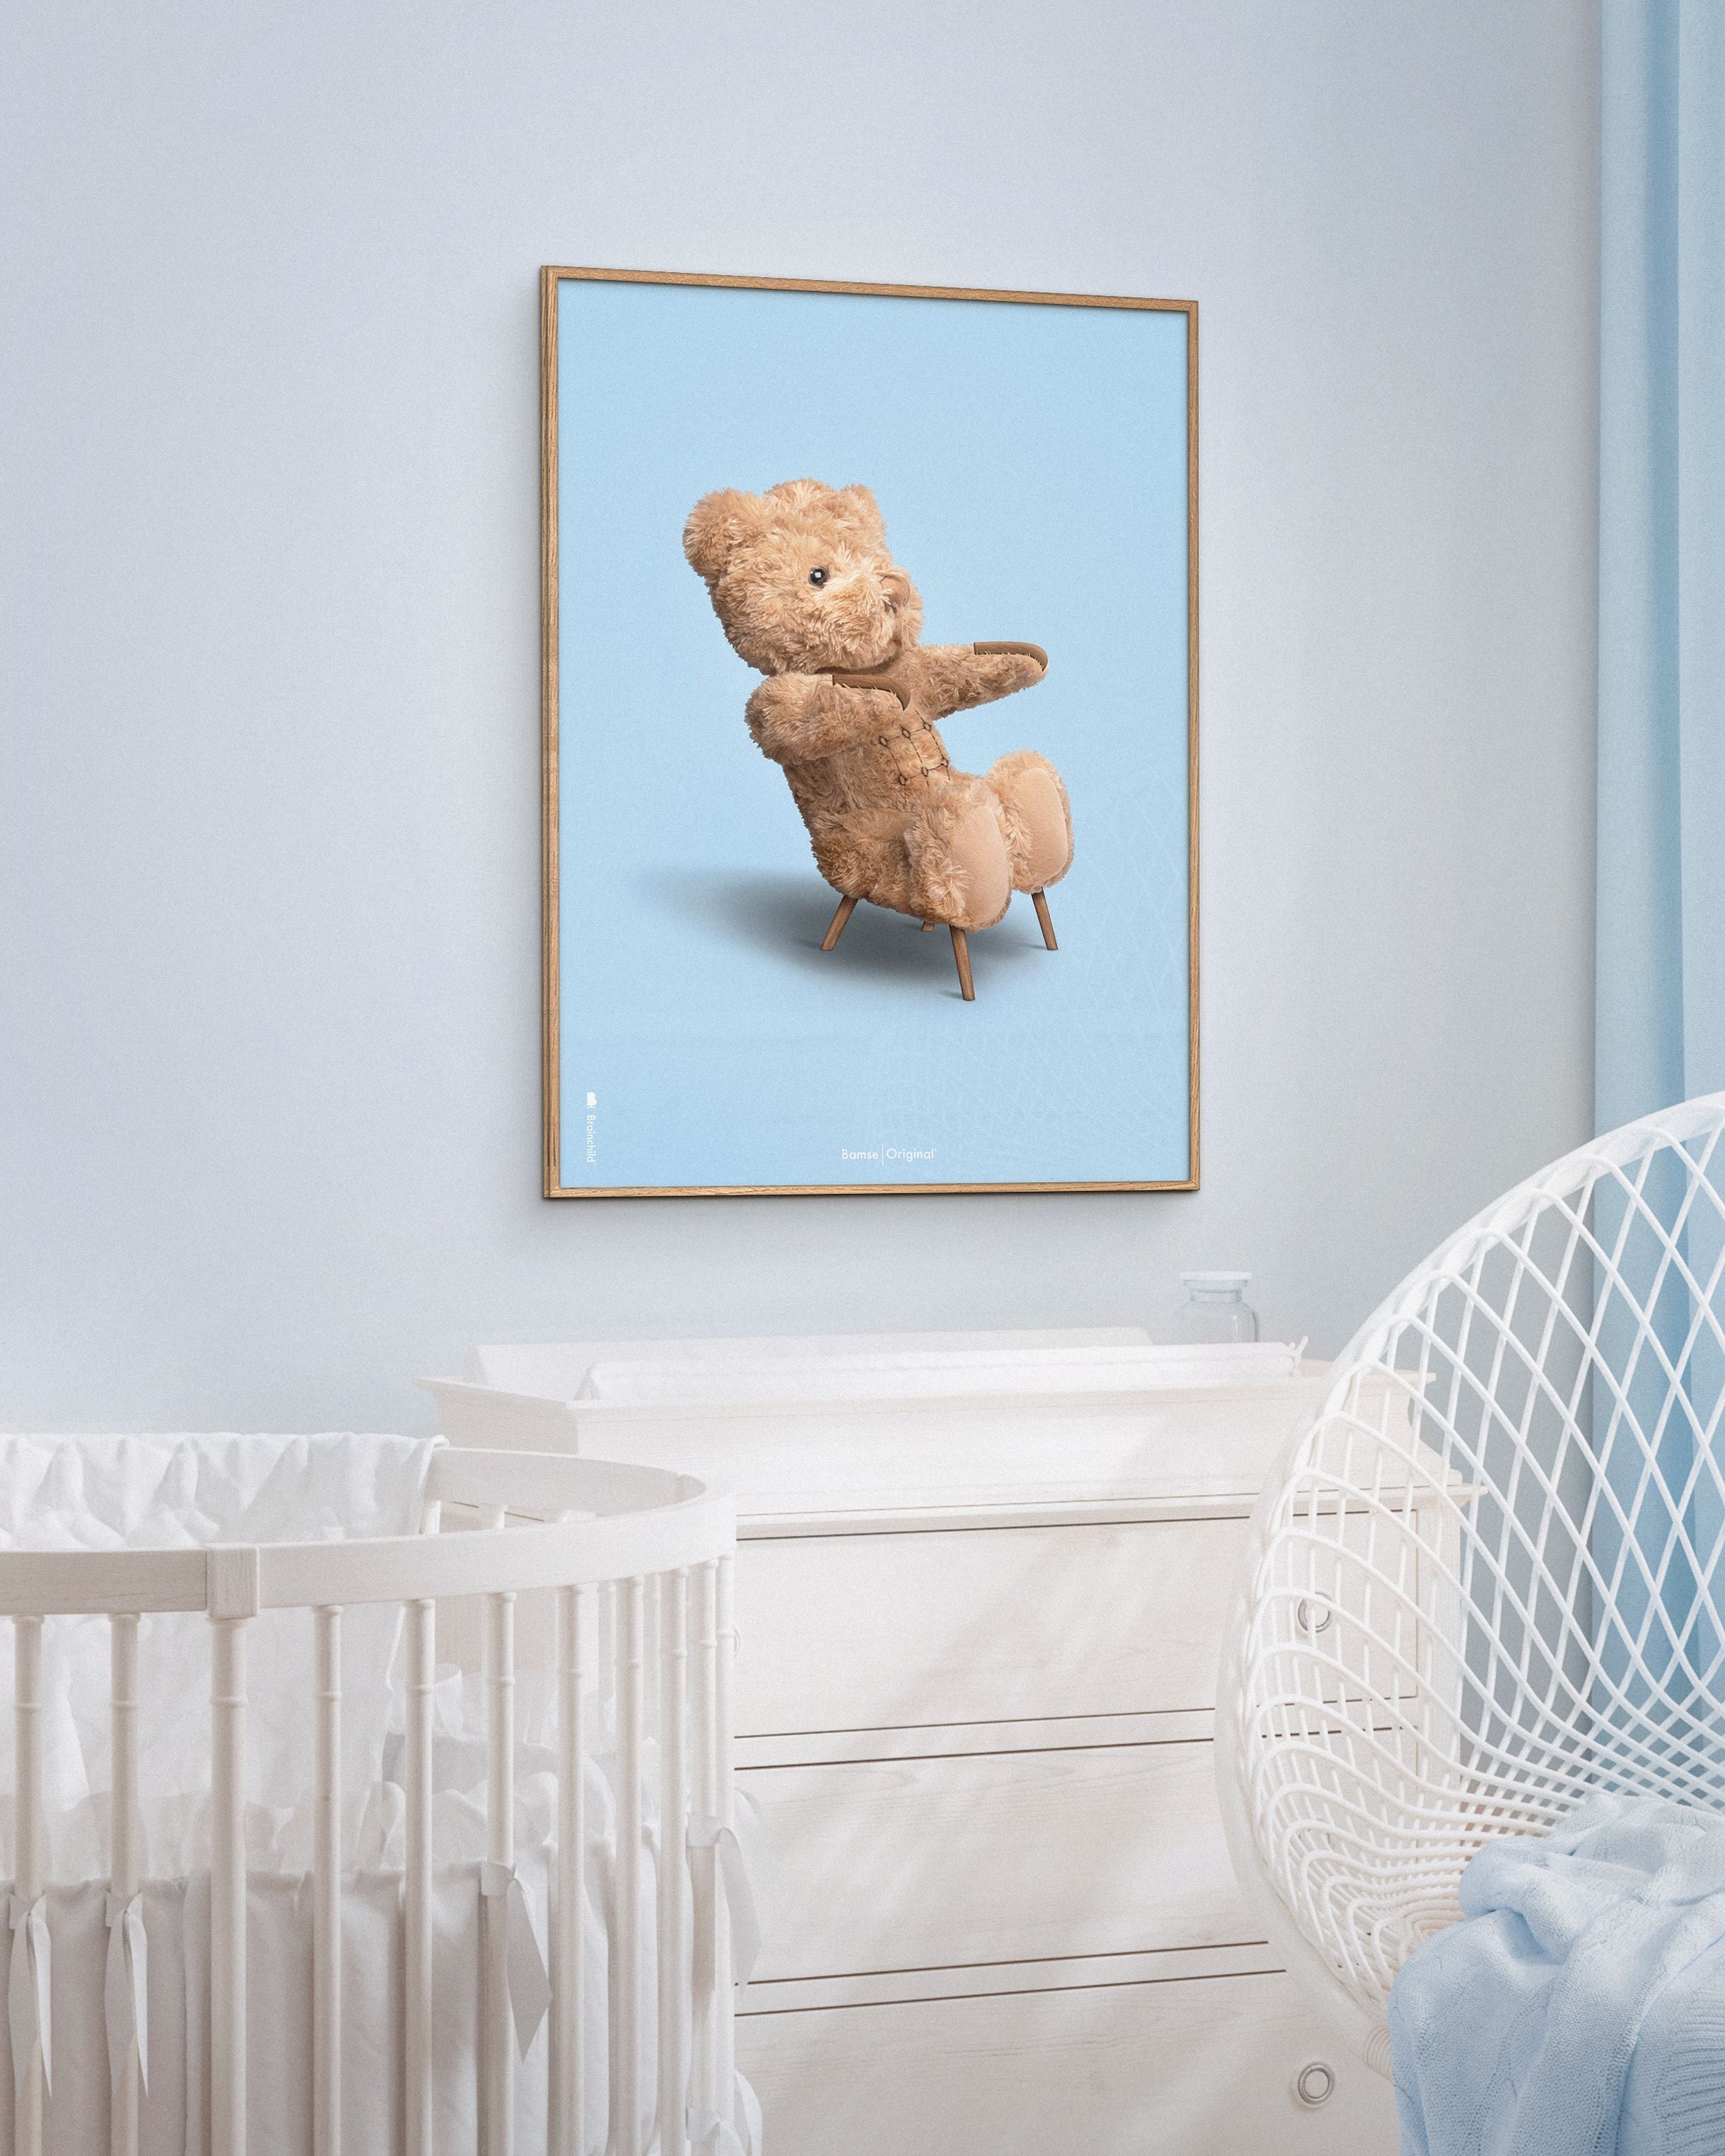 Brainchild Teddy Bear Classic plakát mosazného barevného rámu A5, světle modré pozadí